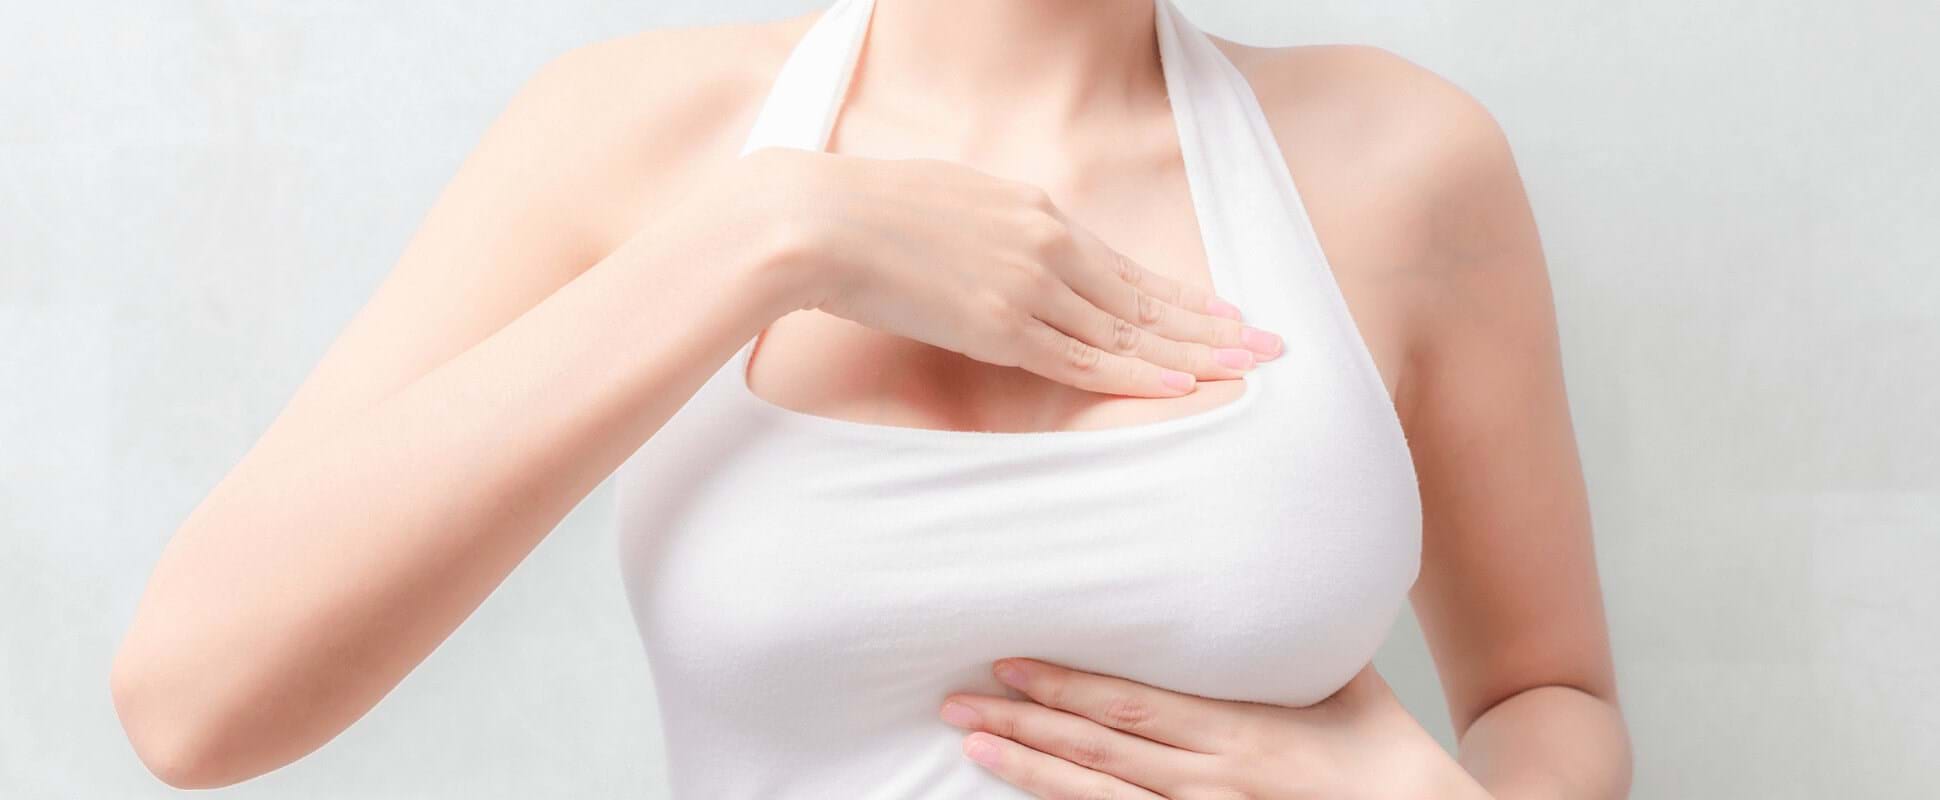 Wat is de beste behandeling voor een correctie van tubulaire borsten?